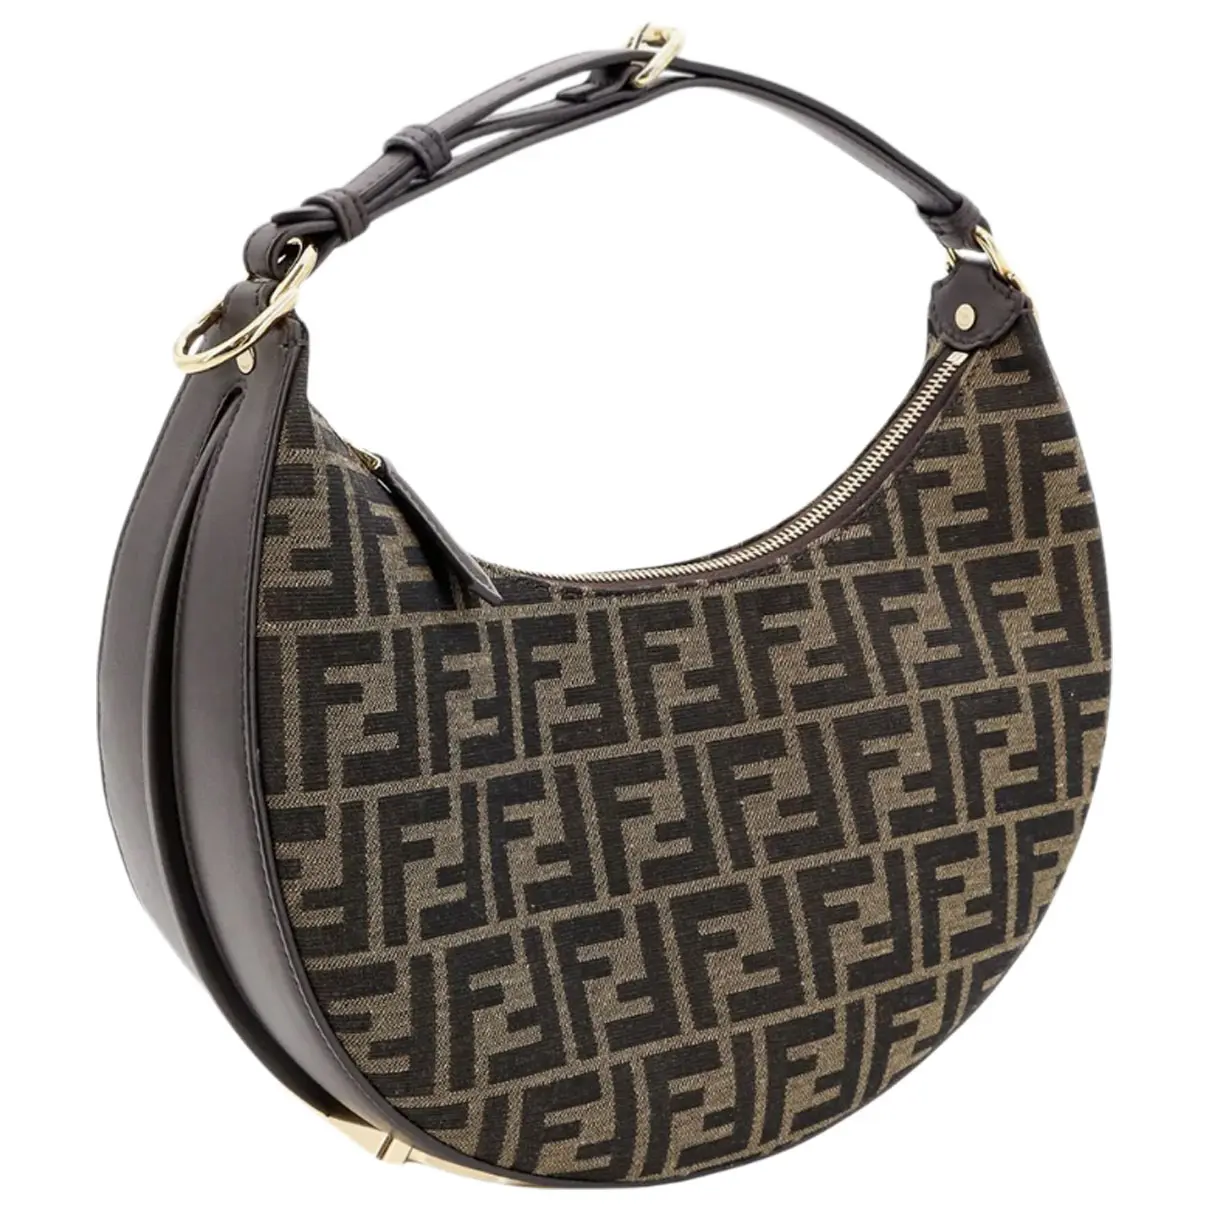 Fendigraphy leather handbag Fendi